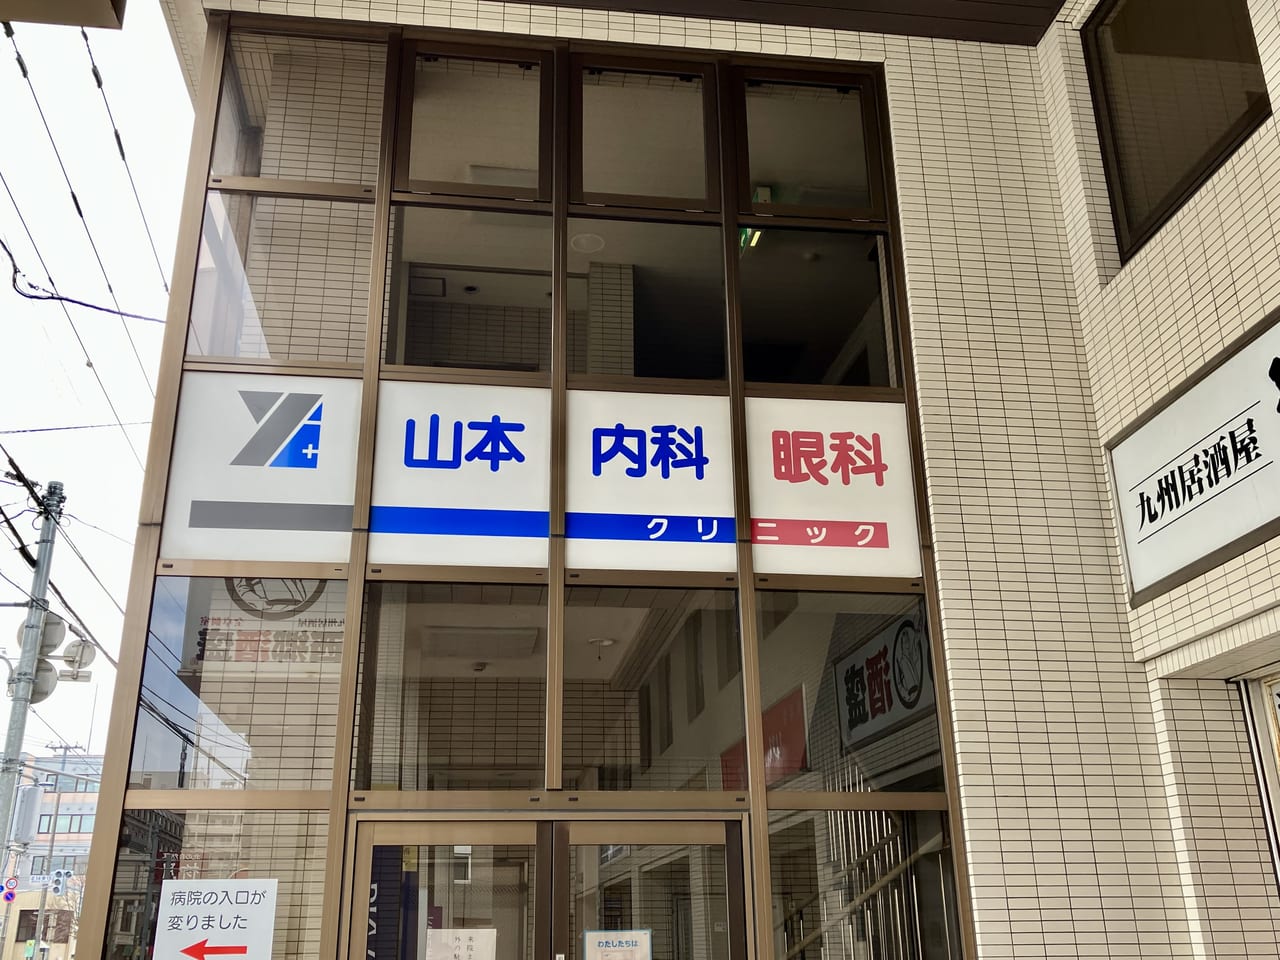 環状通東駅の「山本内科・眼科クリニック」が3月11日をもって閉院していました。